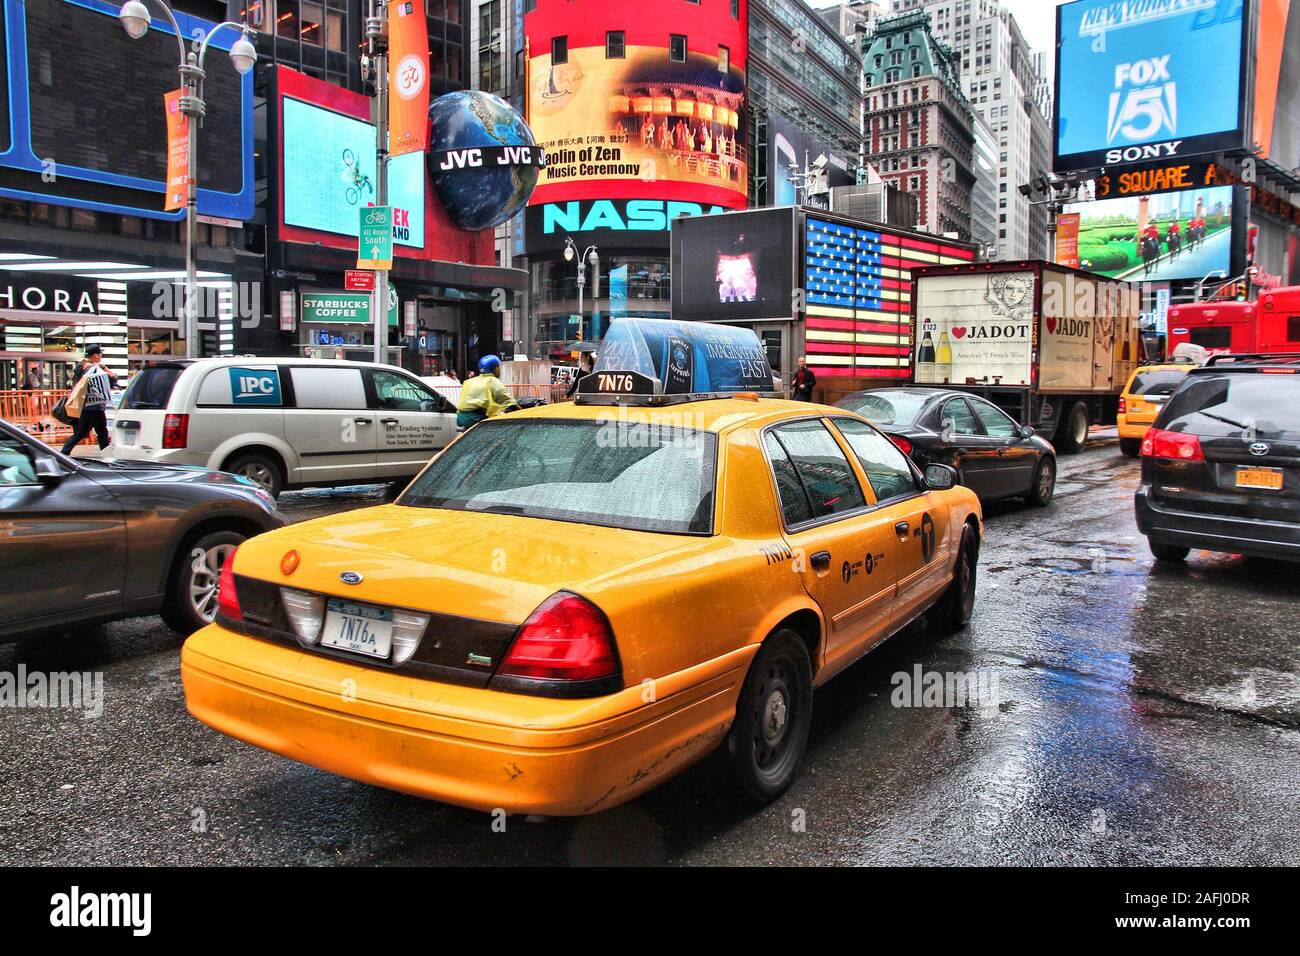 Nueva York, Estados Unidos - 10 de junio de 2013: unidades de Taxi lluvioso en Times Square, en Nueva York Times Square es uno de los lugares más reconocidos en el mundo. Más de 300.000 pe Foto de stock